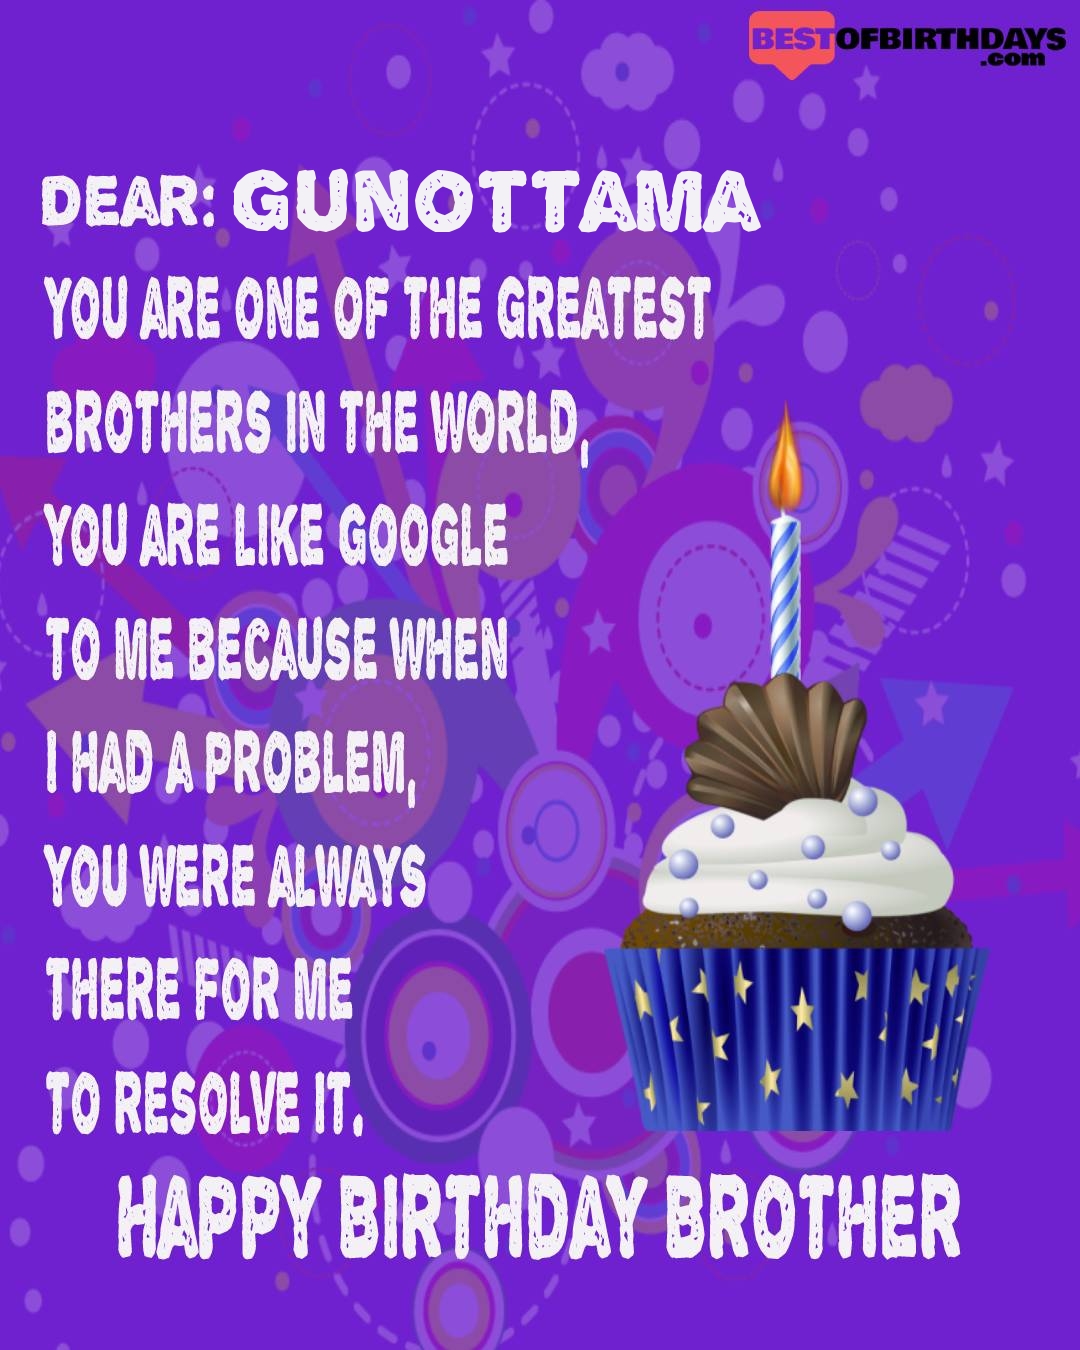 Happy birthday gunottama bhai brother bro